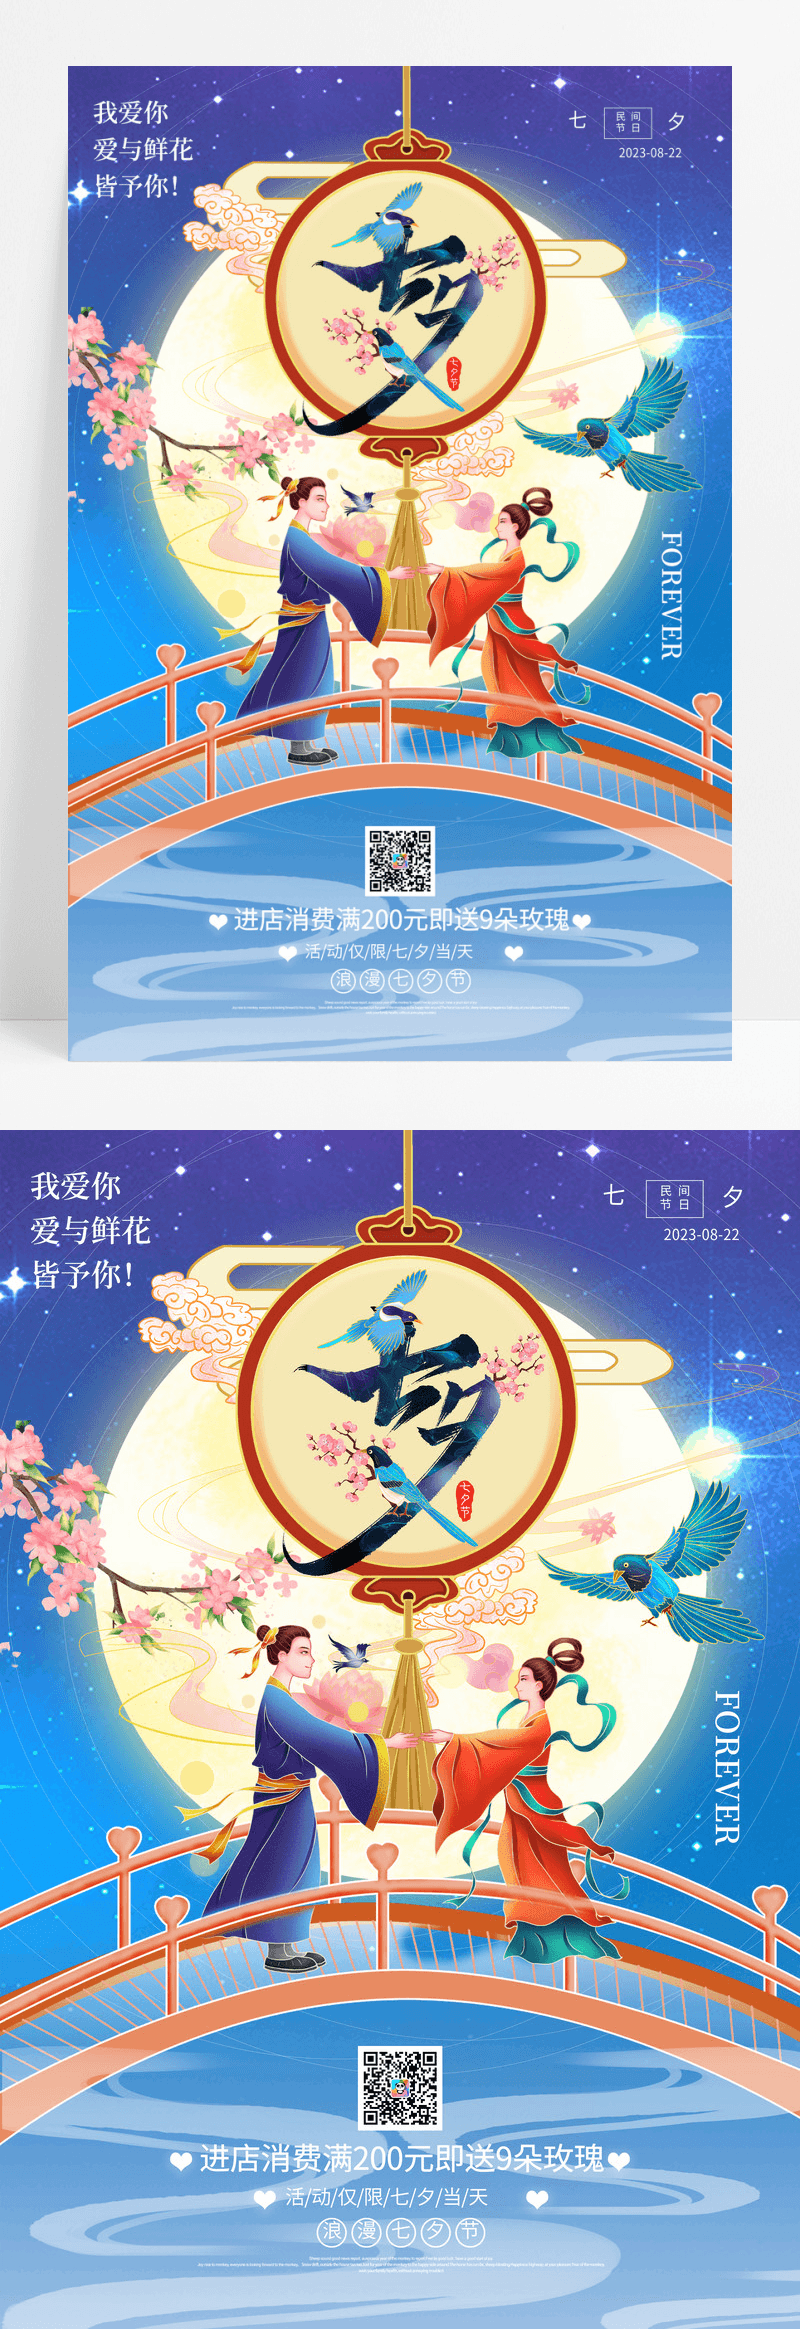 蓝色中国风唯美七夕浪漫宣传海报